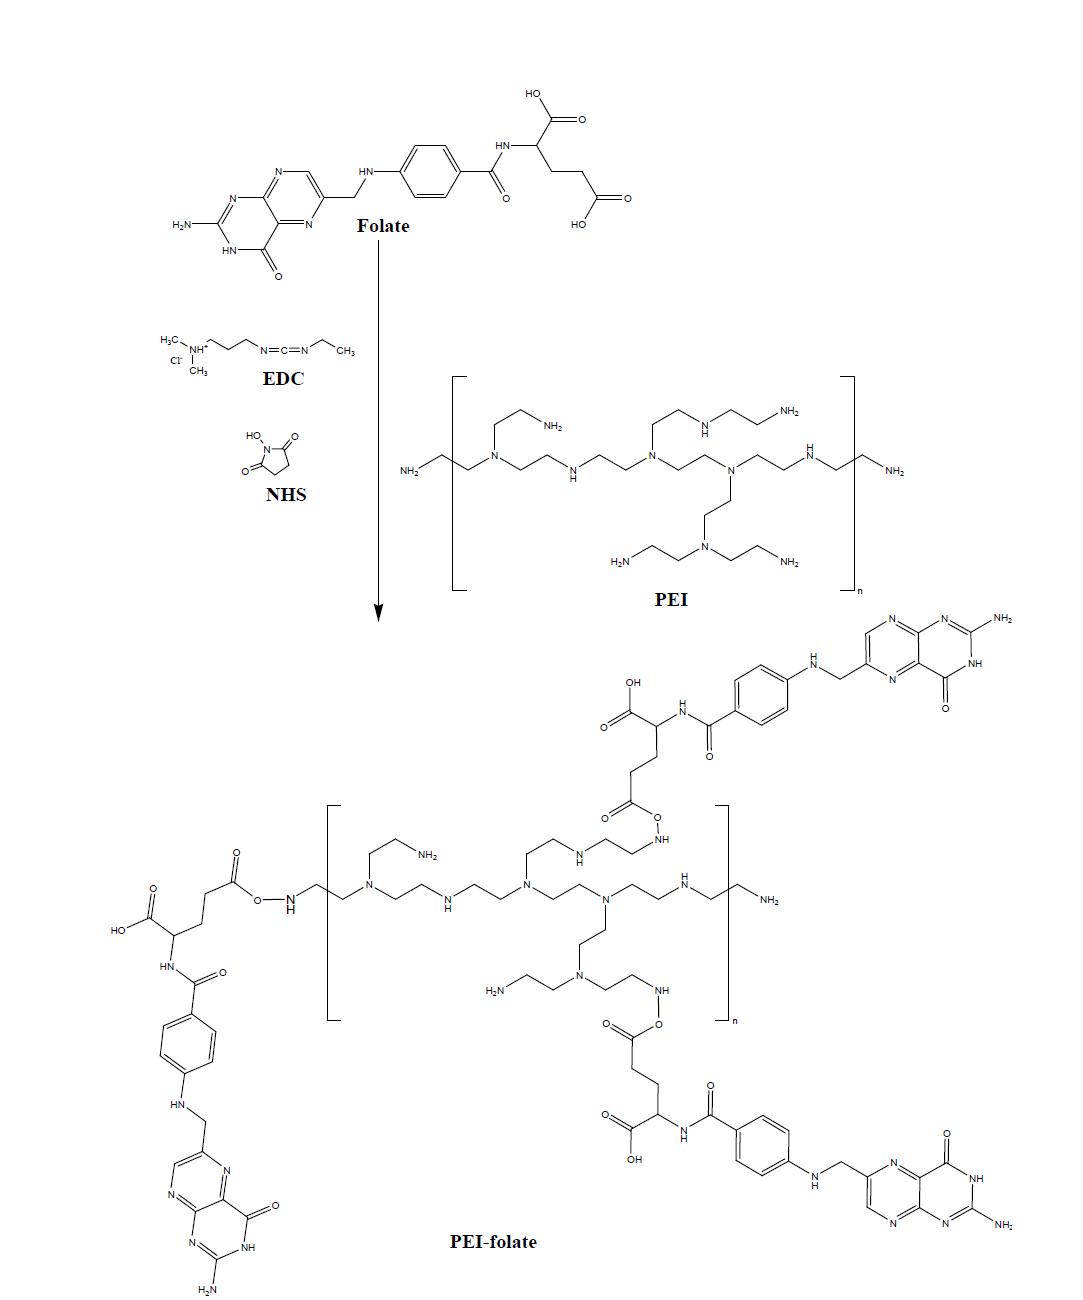 PEI-folate 합성 과정 모식도